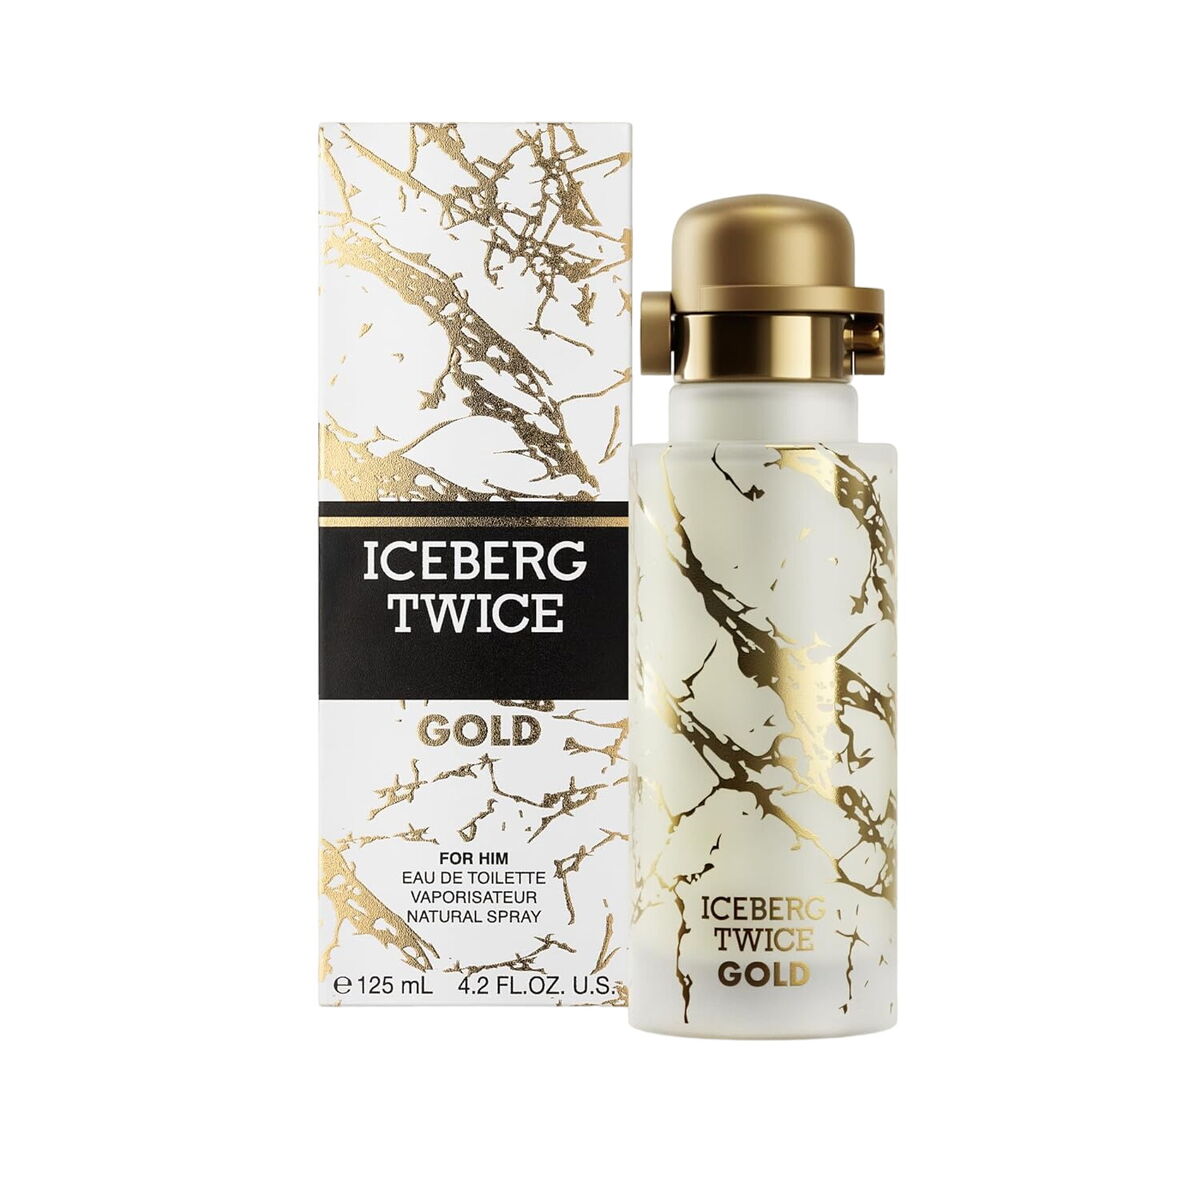 Parfum Homme Iceberg EDT Twice Gold 125 ml